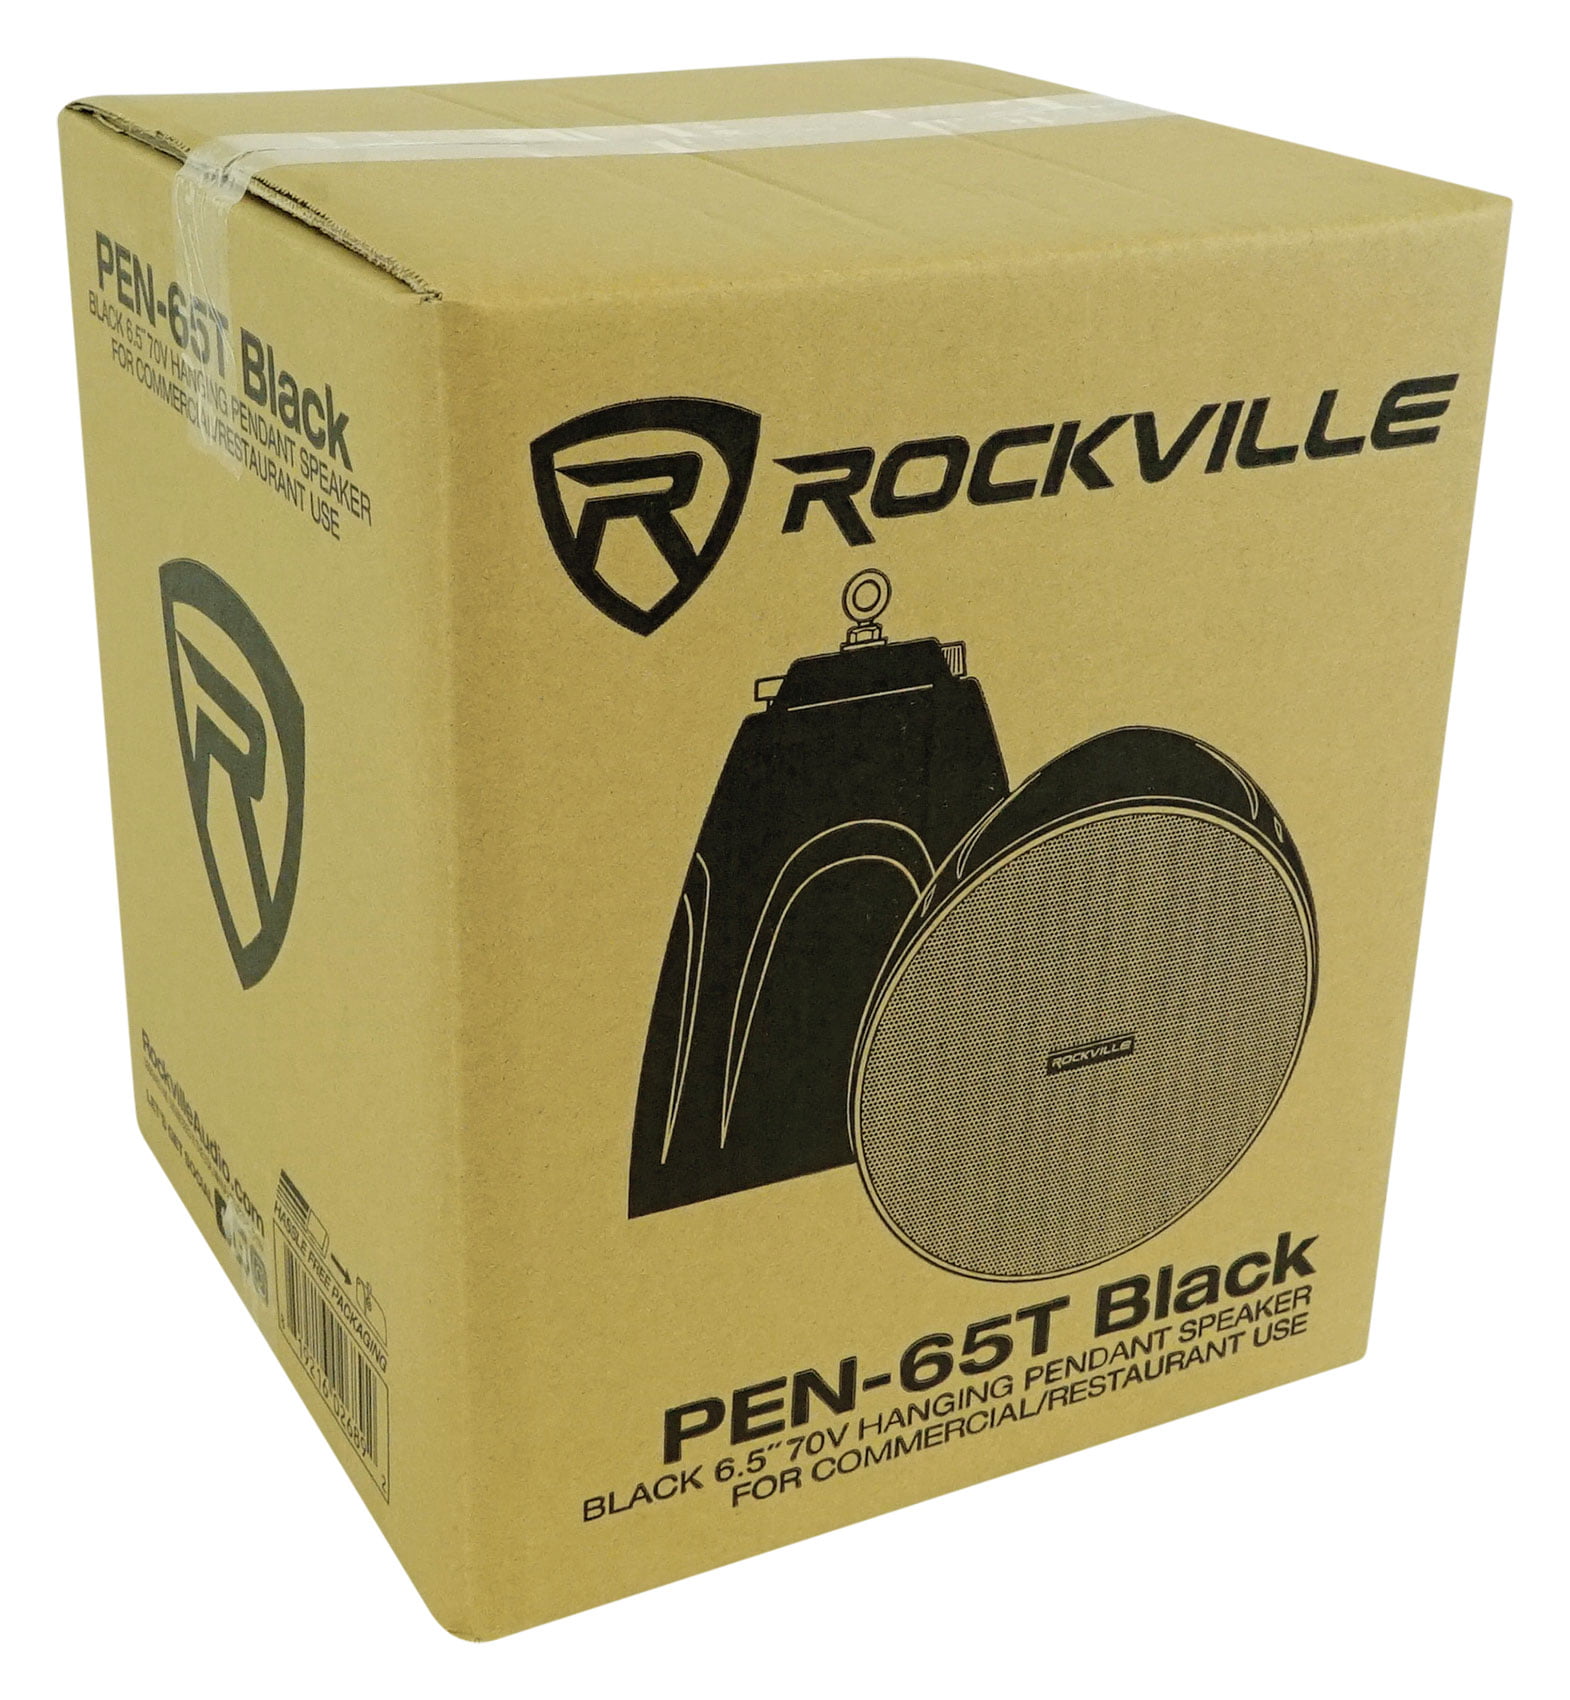 Rockville 6-Zone Commercial Amp+9 Black Pendant Speakers For Restaurant/Bar/Cafe 